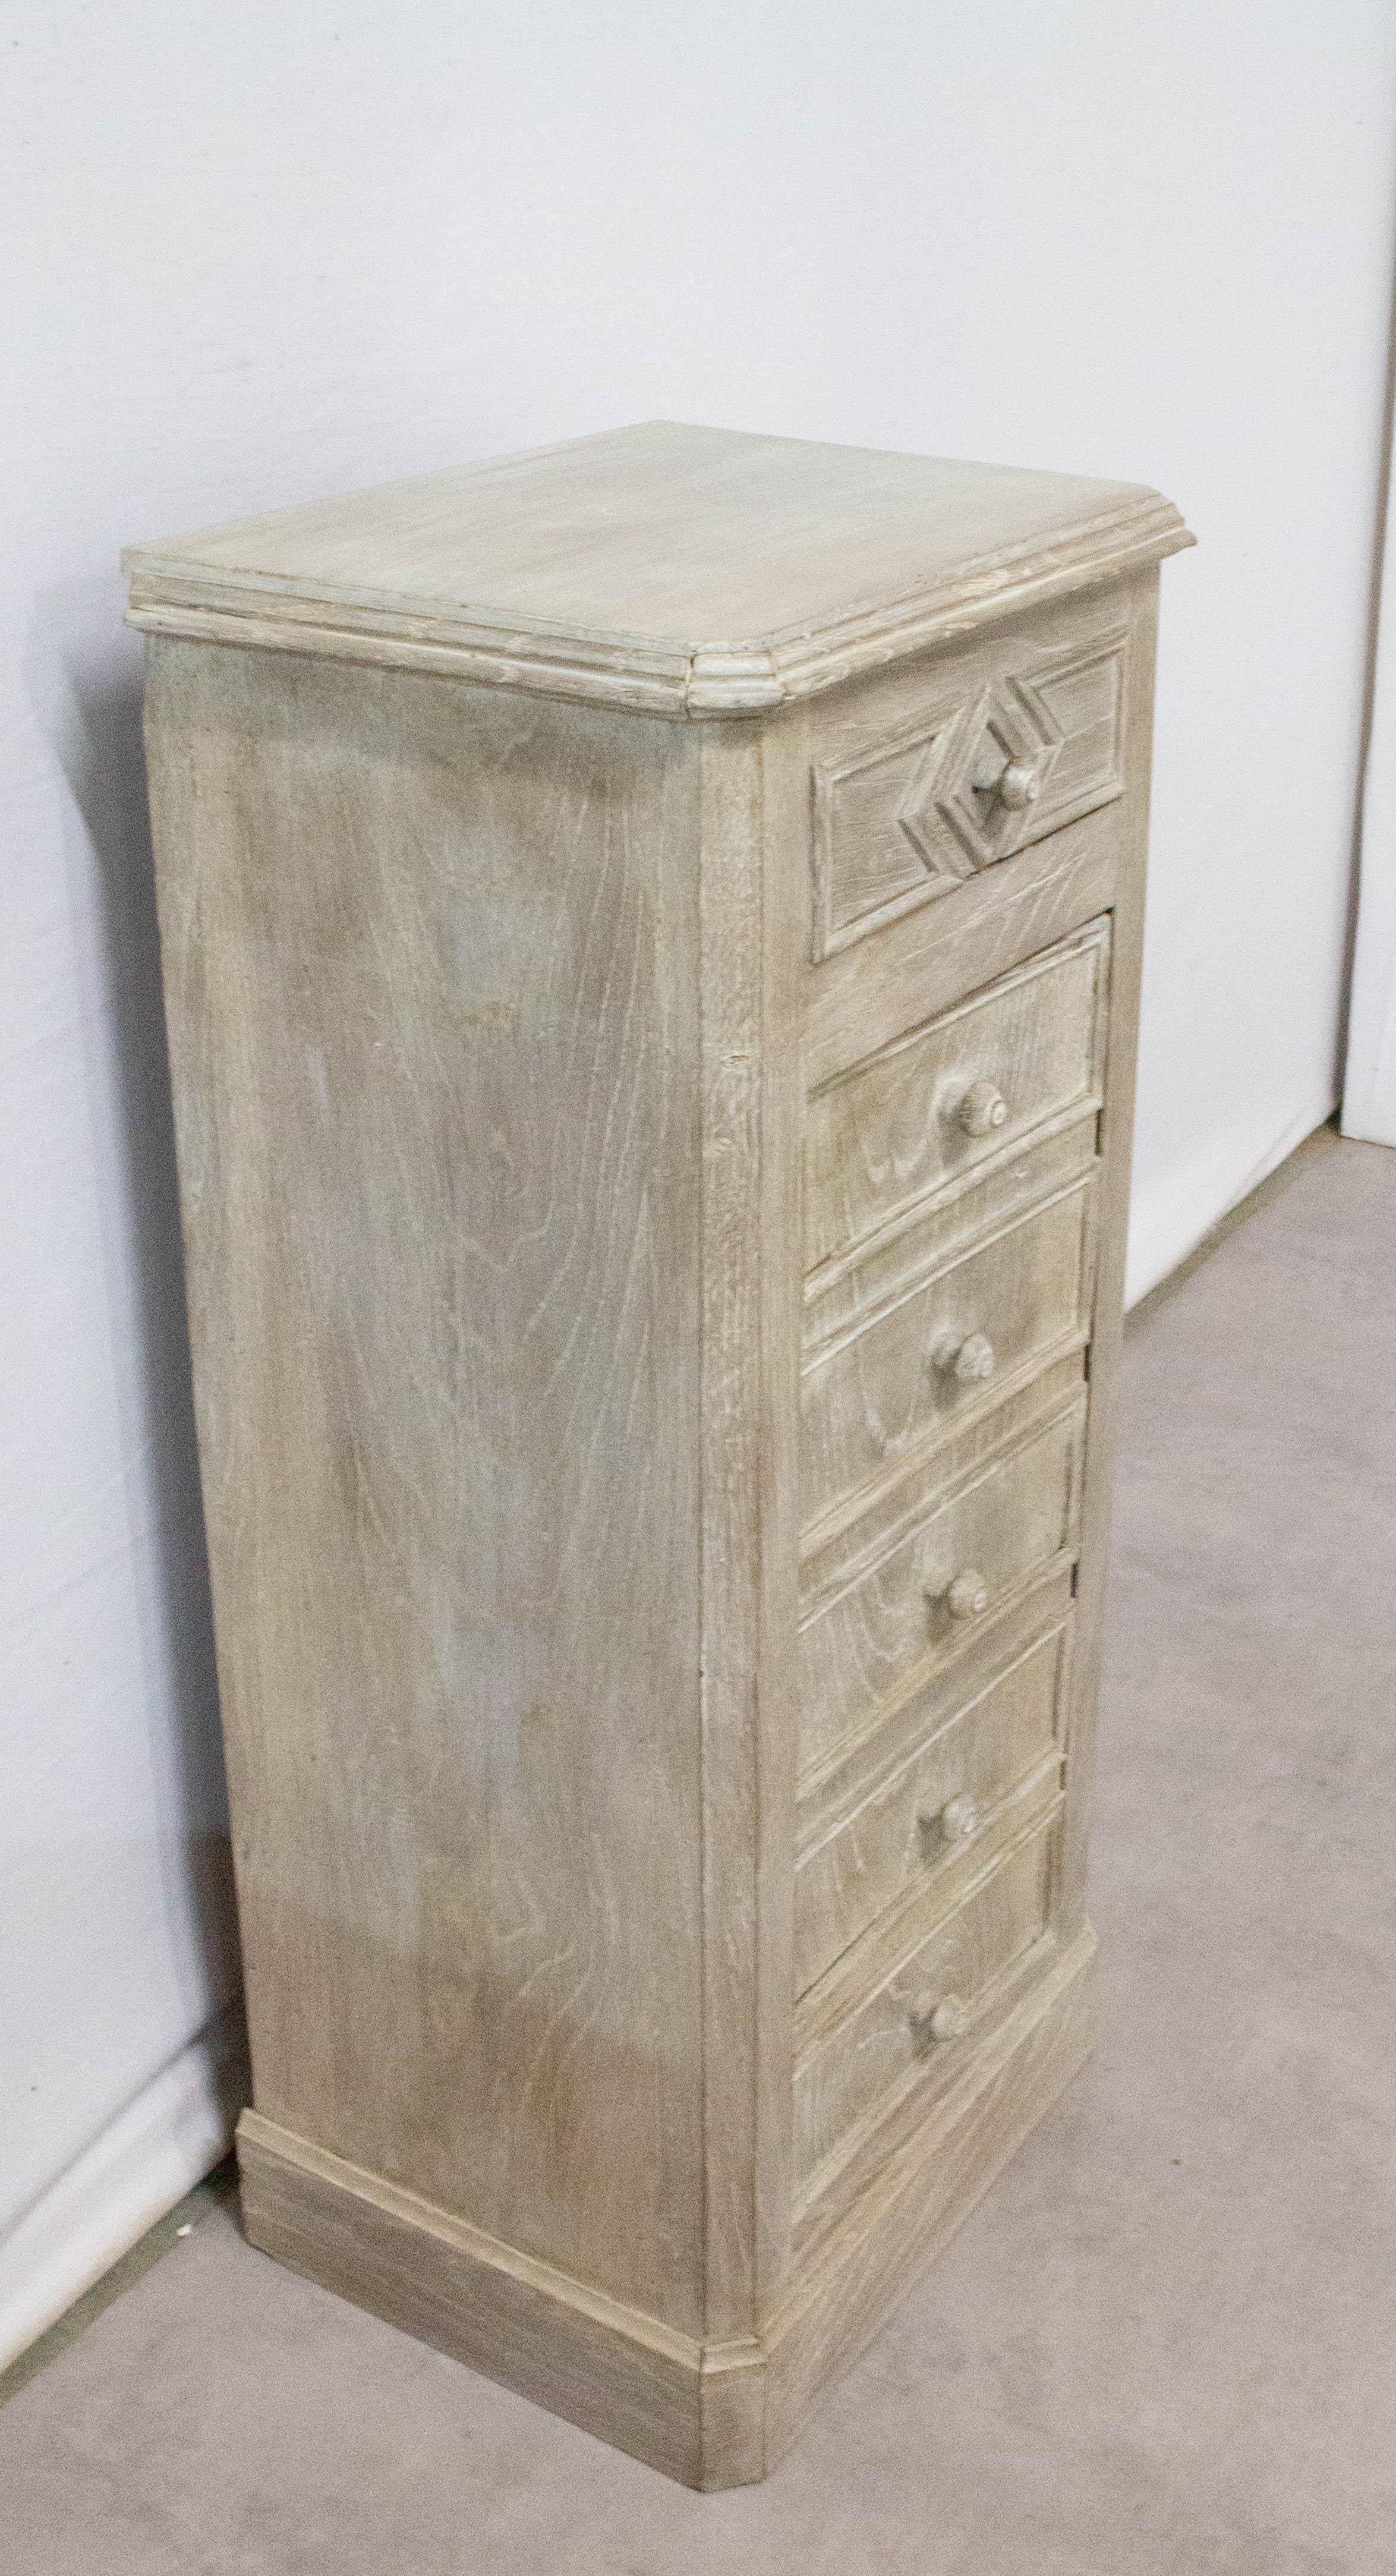 Table de nuit table de chevet chaulée française, 
Châtaignier fin XIXe siècle
Bon état, le meuble a été chaulé il y a quelques années

Pour l'expédition : 
Mesures : 41.5 x 31,5 x 90,5 cm, 17 kg.